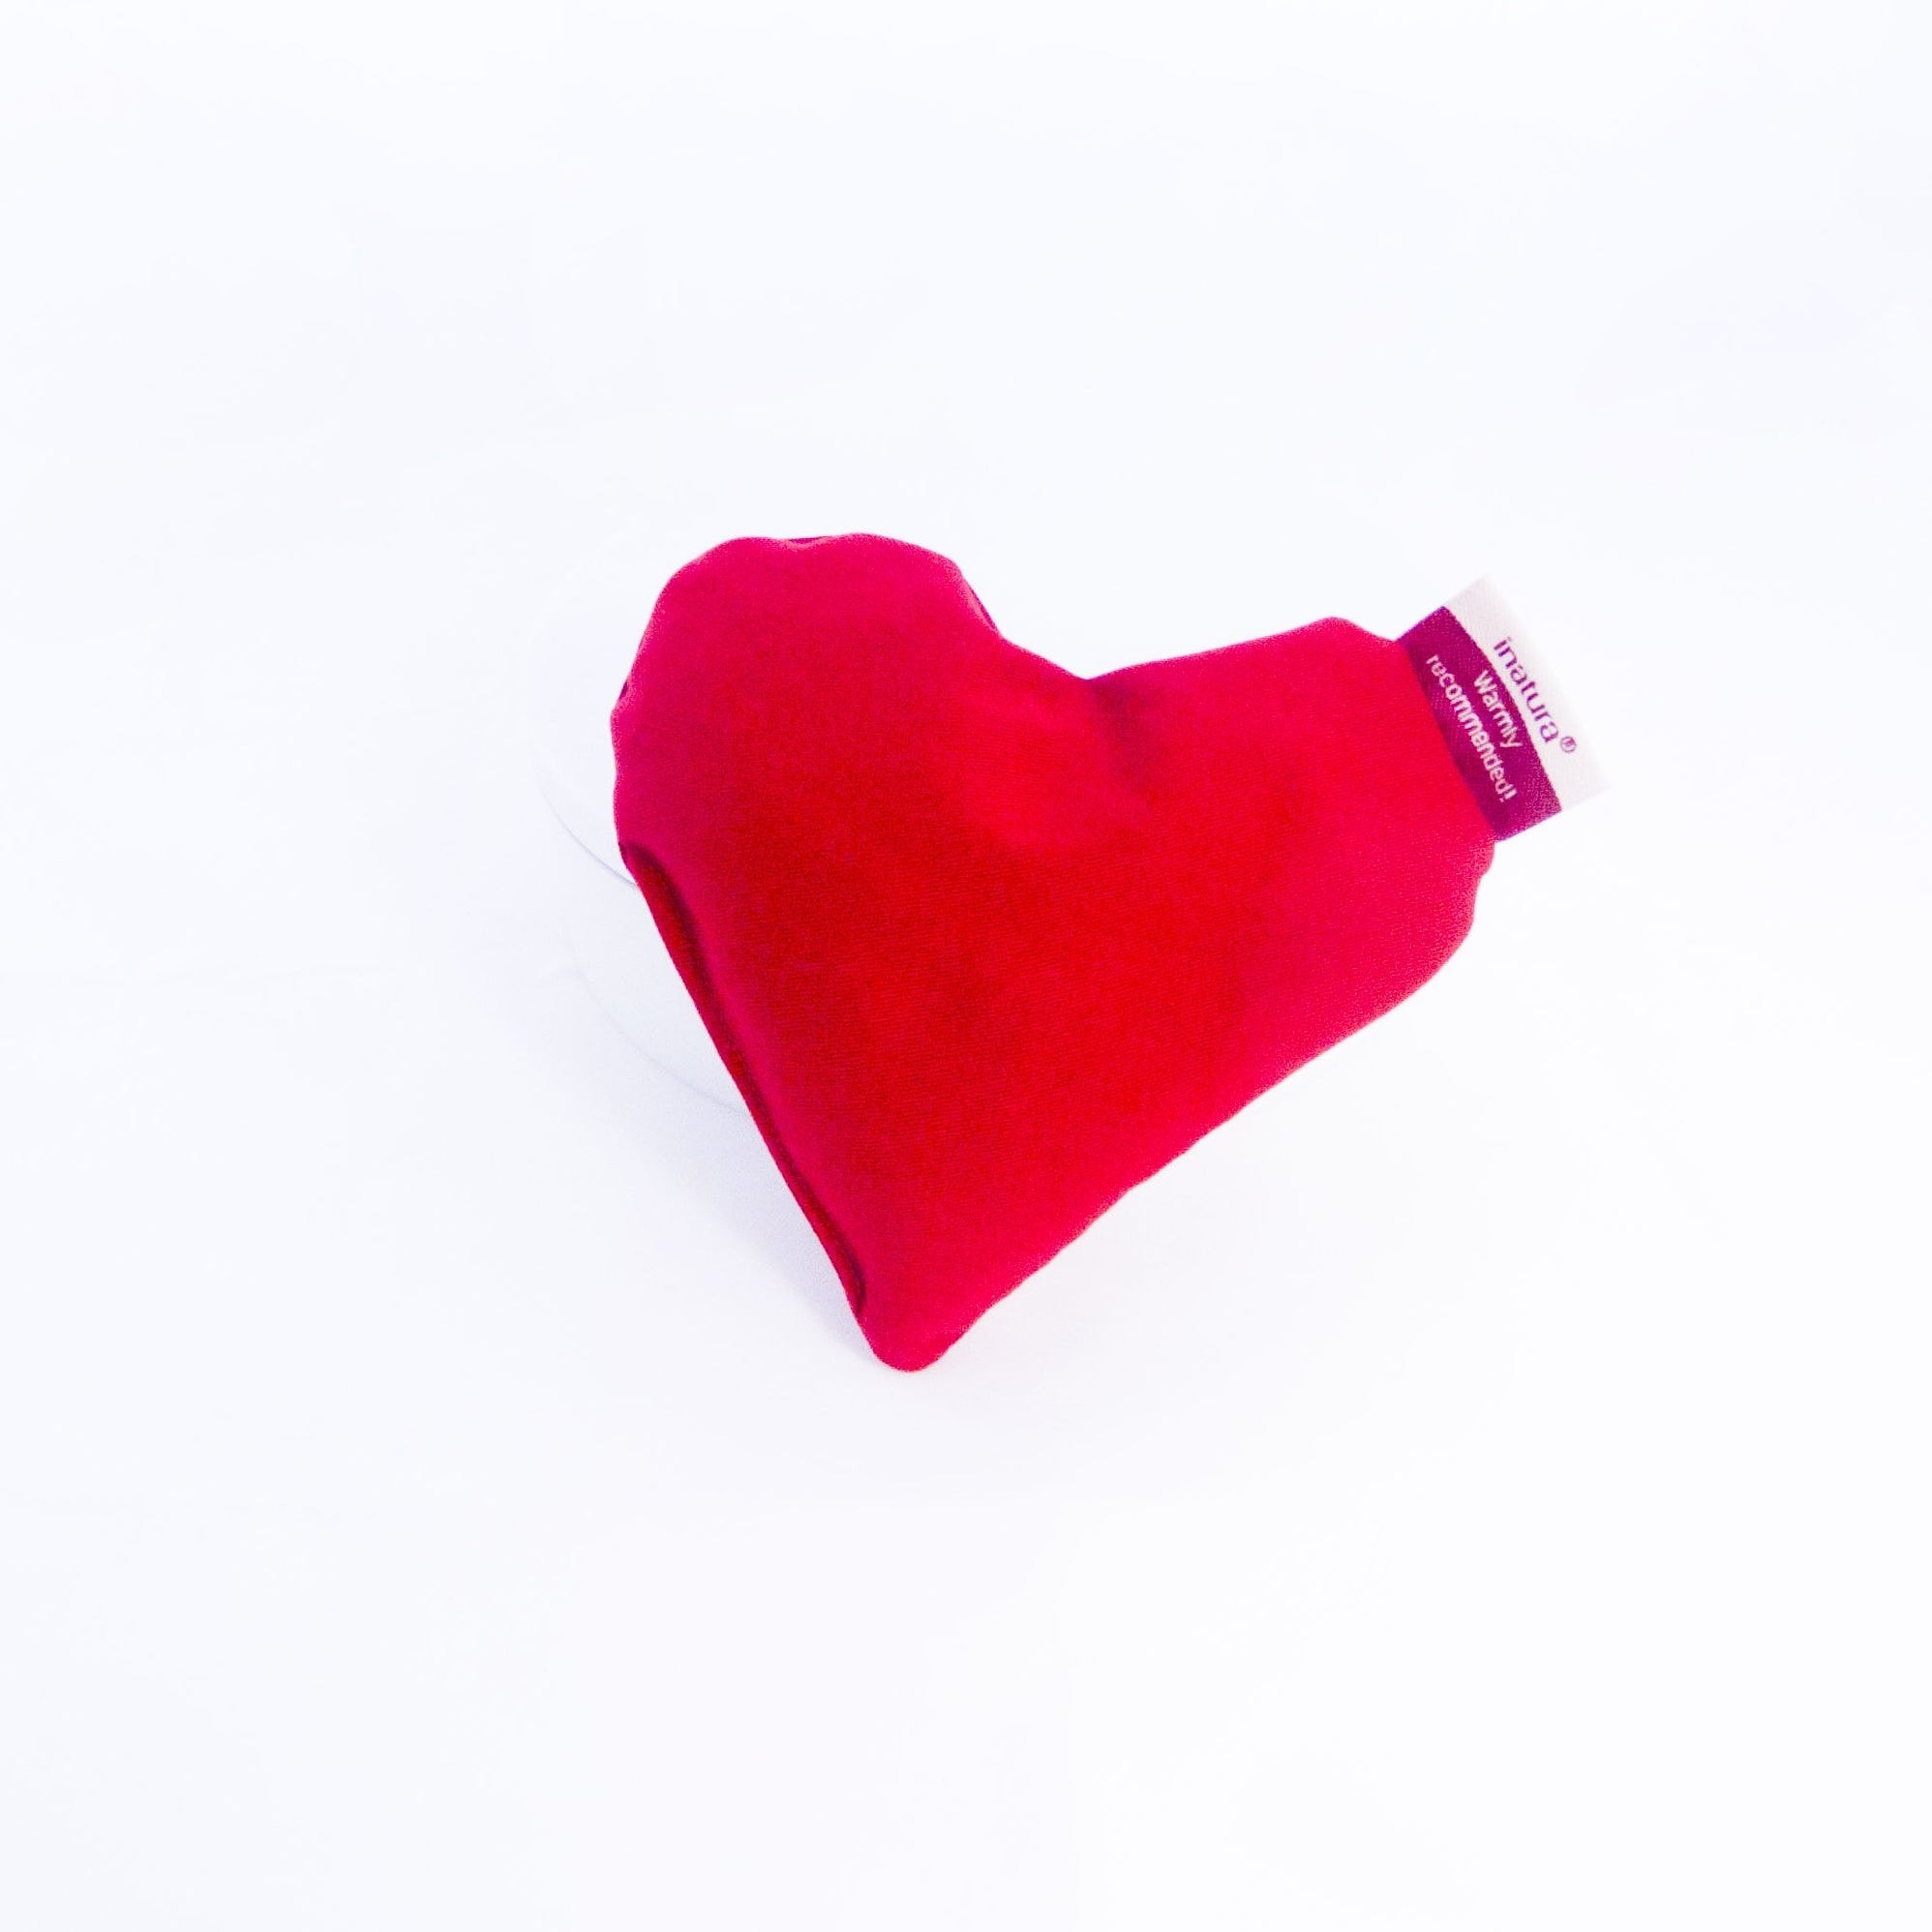 Little heart red - 3 hartvormige kersenpitkussentjes -  warmtekussentje voor microgolfoven